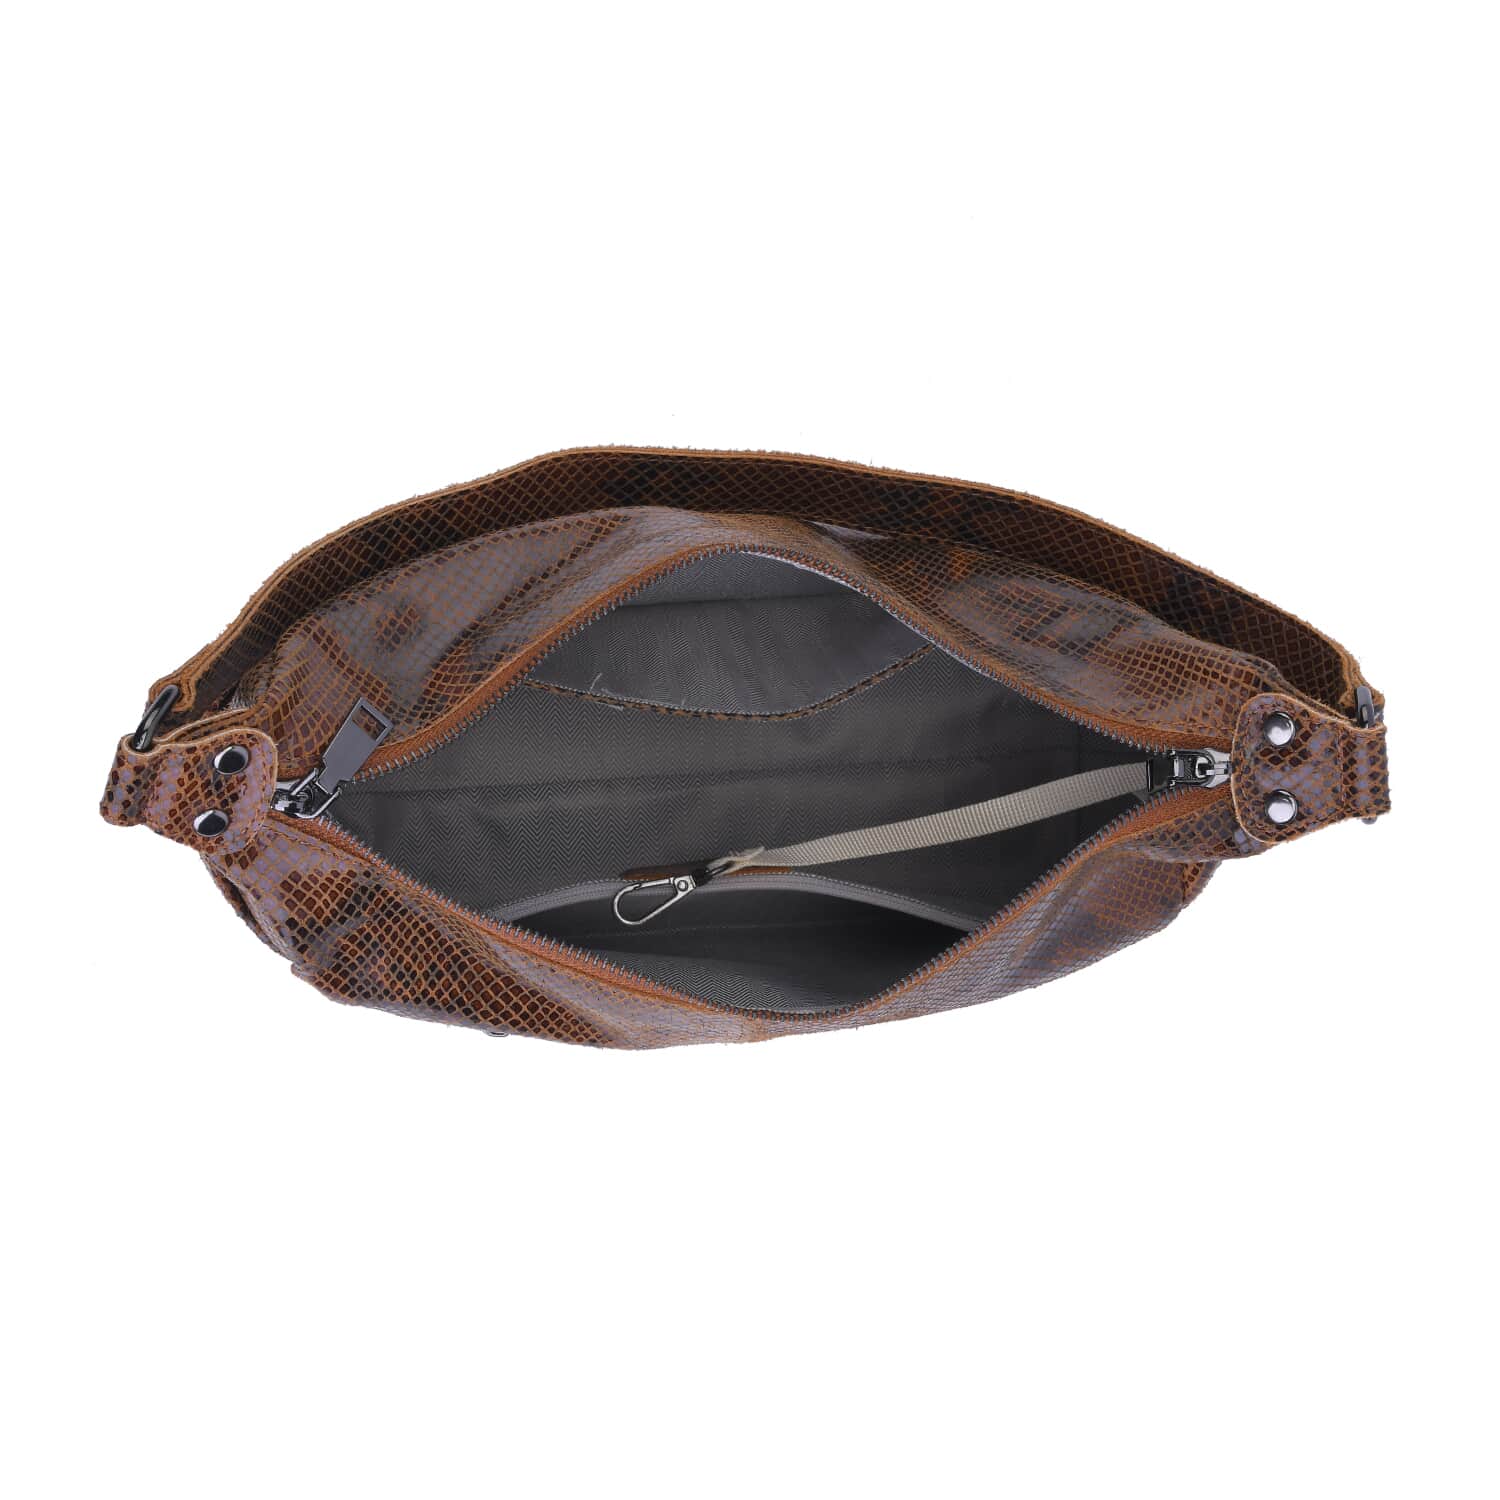 Buy Tan and Black Python Embossed Print Genuine Leather Hobo Bag